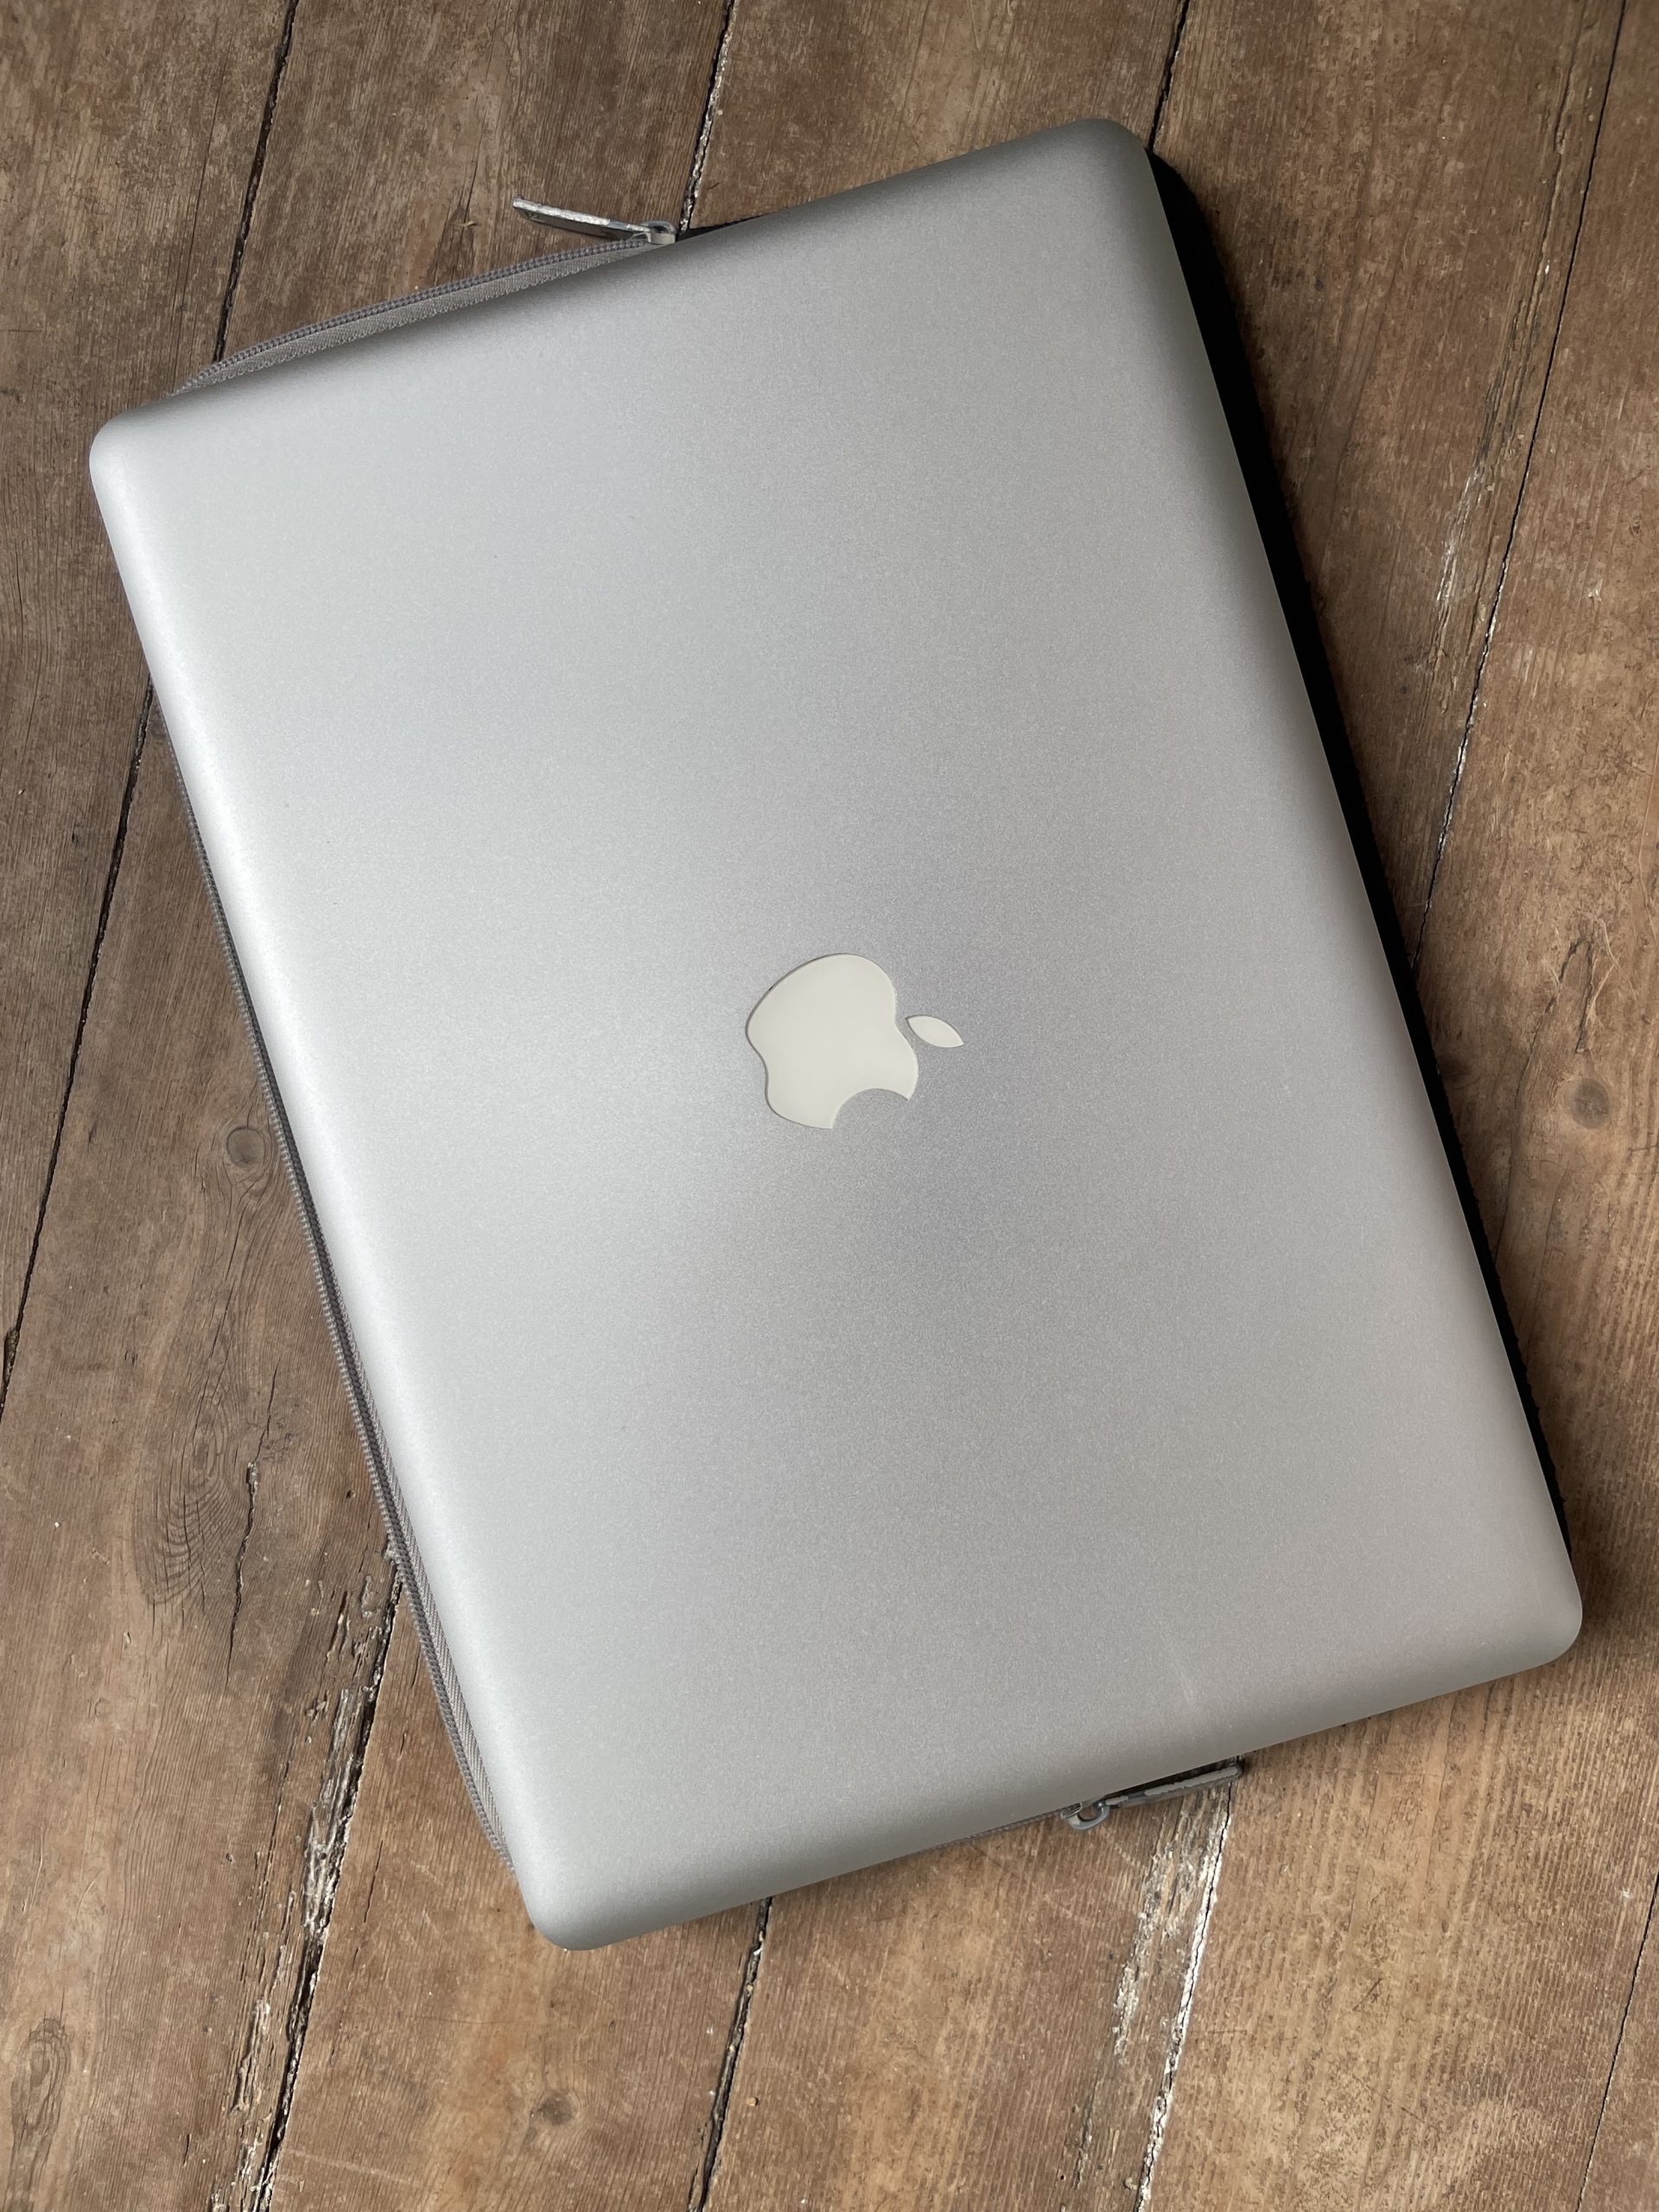 MacBook Pro 15” mi-2012 i7 16Go-1To SSD